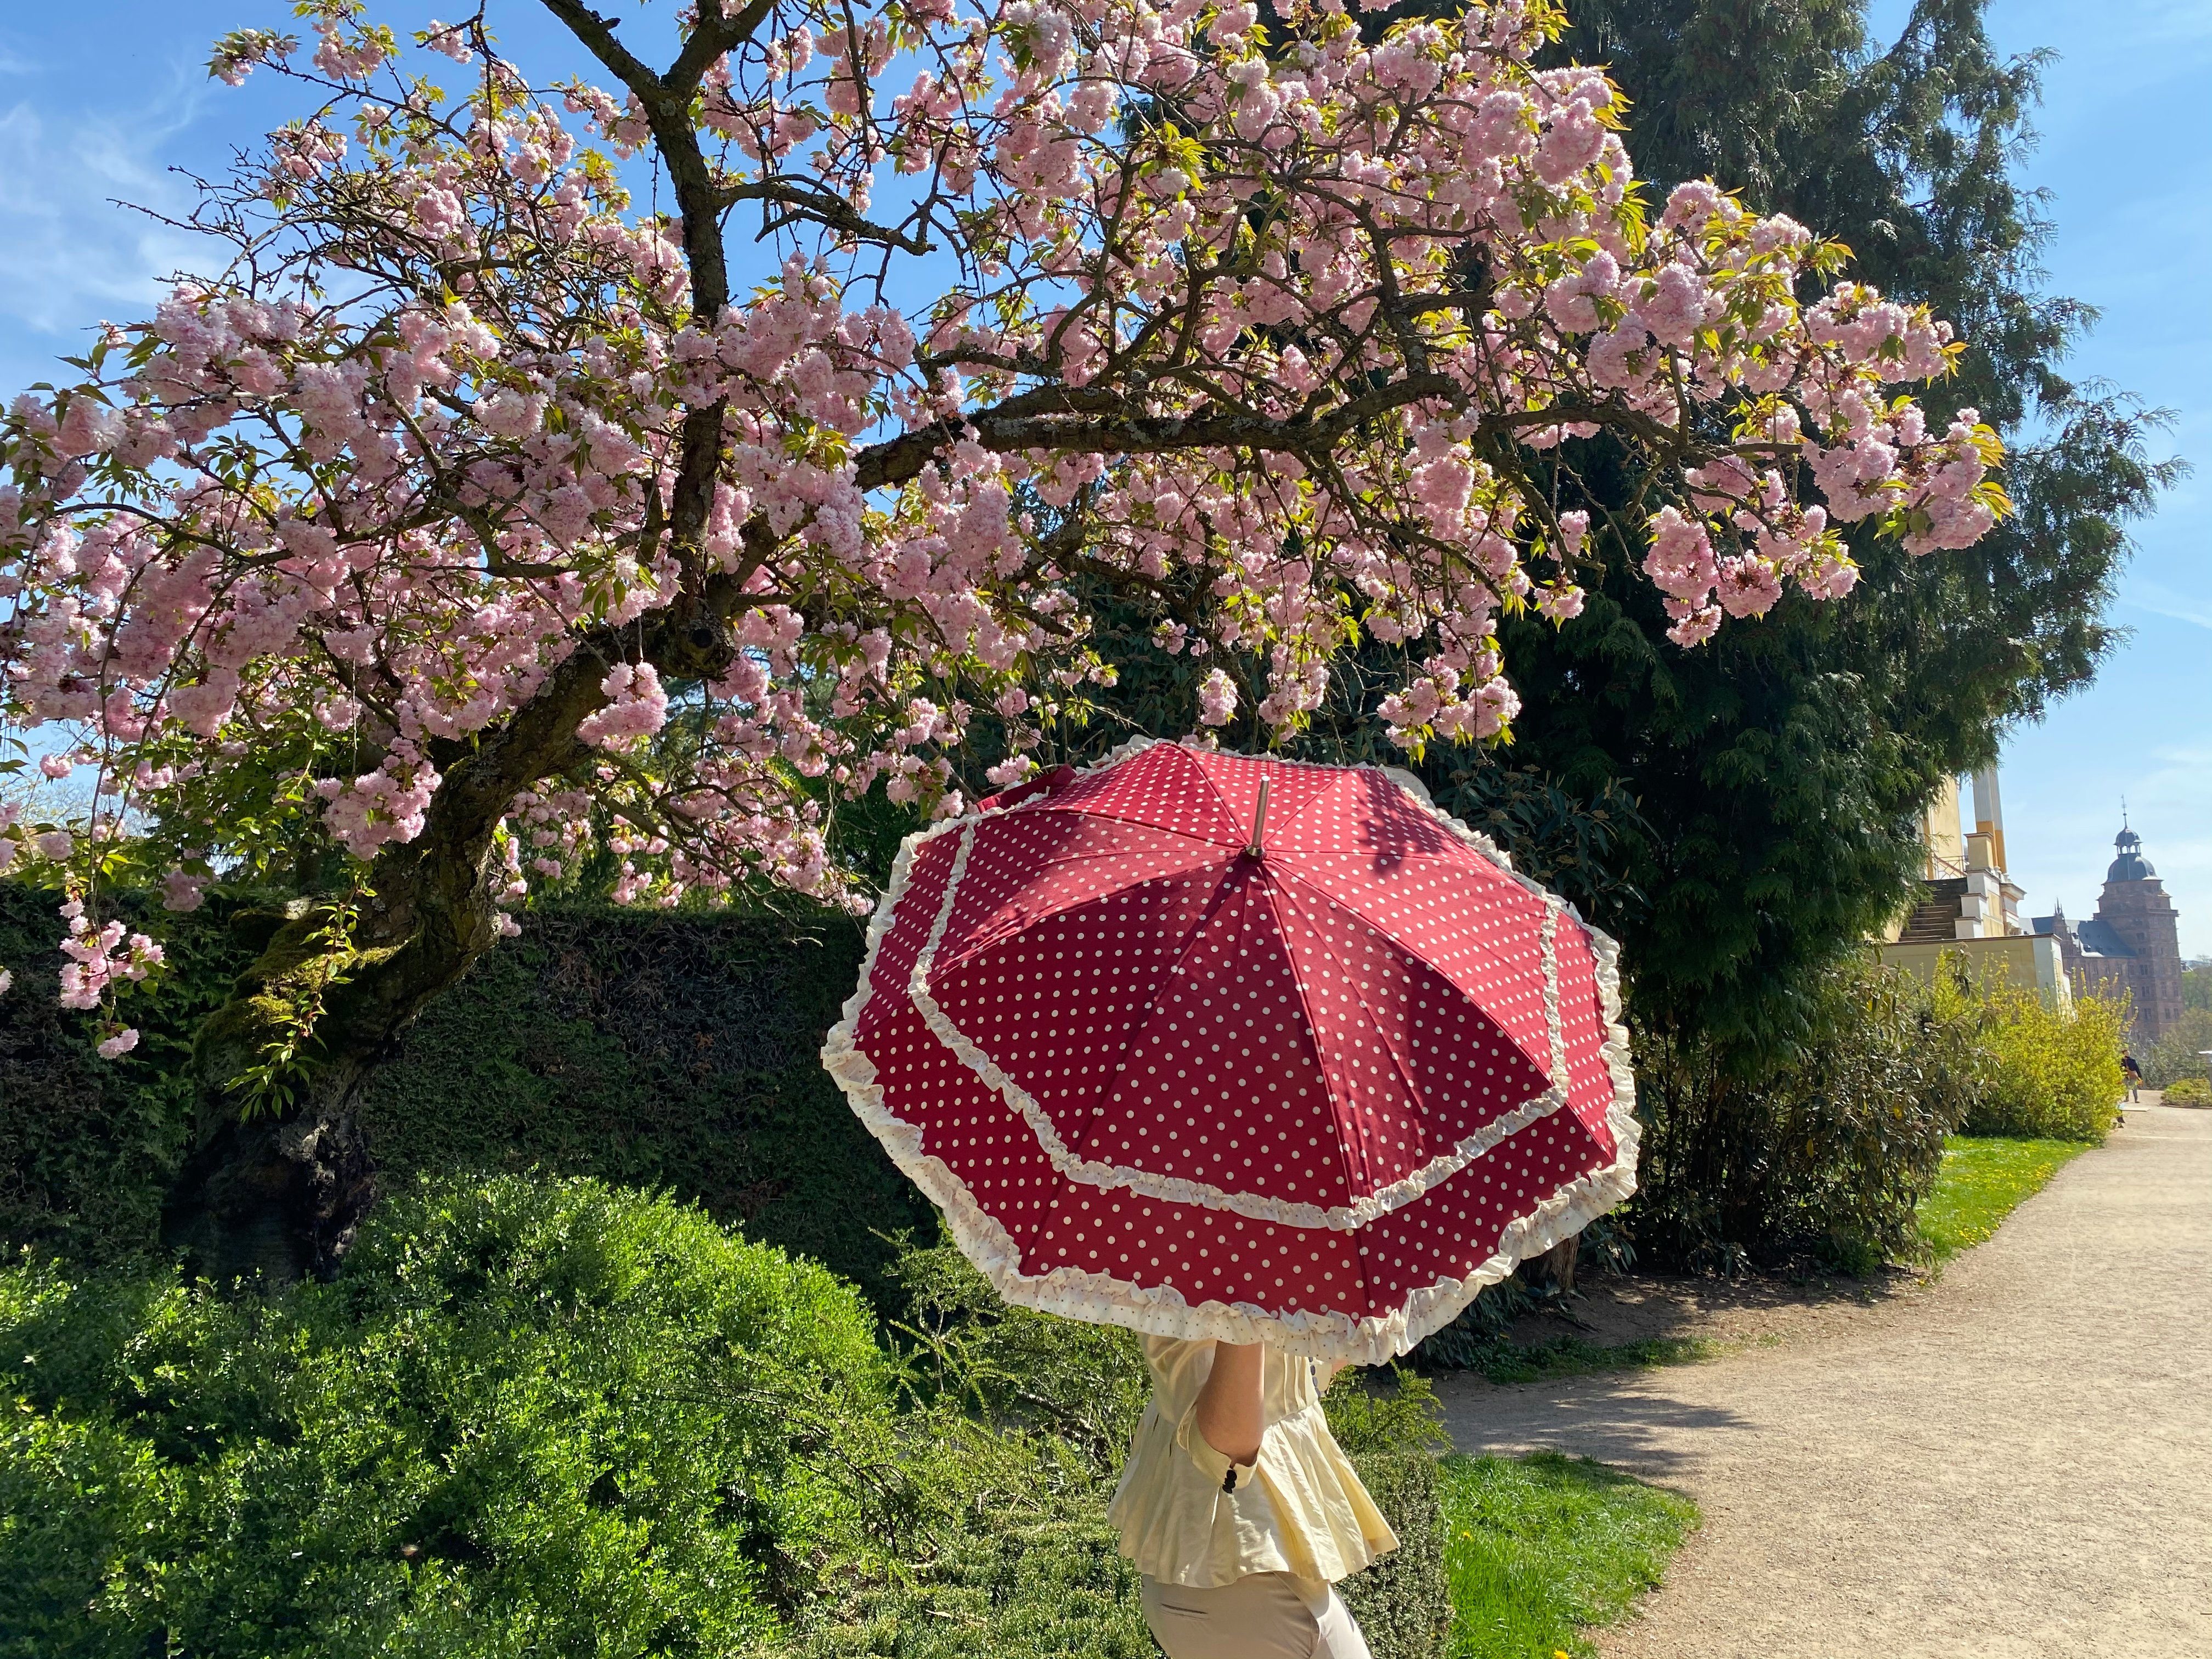 Rüschenkanten Hochzeitsschirm cremen Mary, in Punkten zwei von Regenschirm Sonnenschirm Lilienfeld mit bordeaux Stockregenschirm